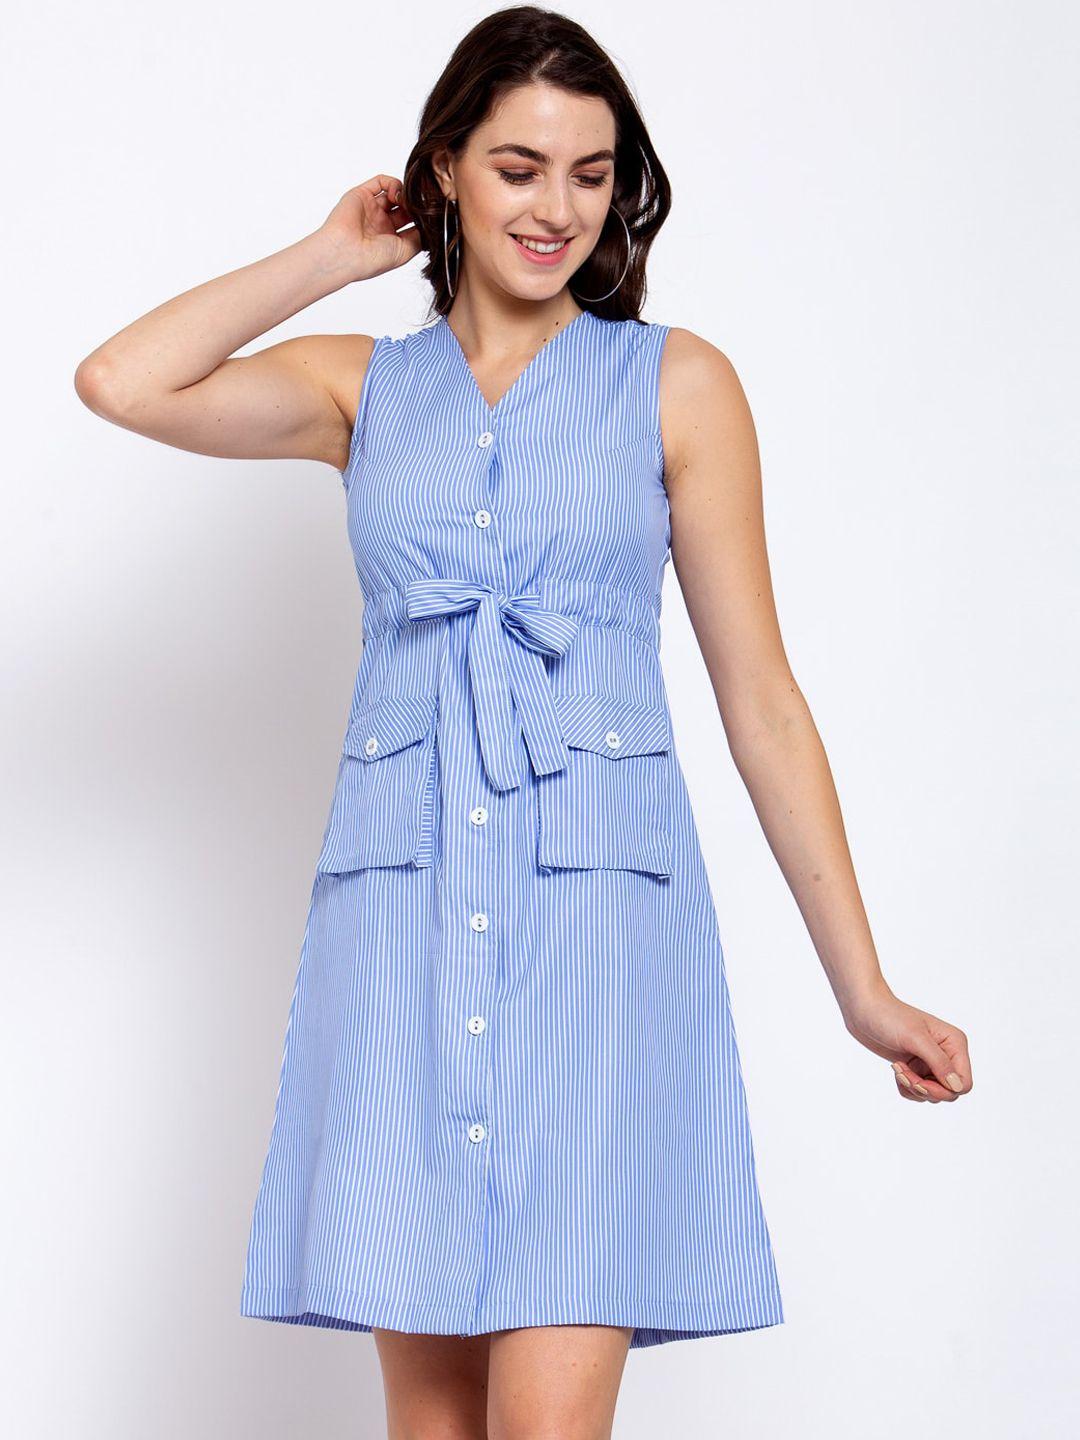 style-quotient-blue-&-white-striped-cotton-dress